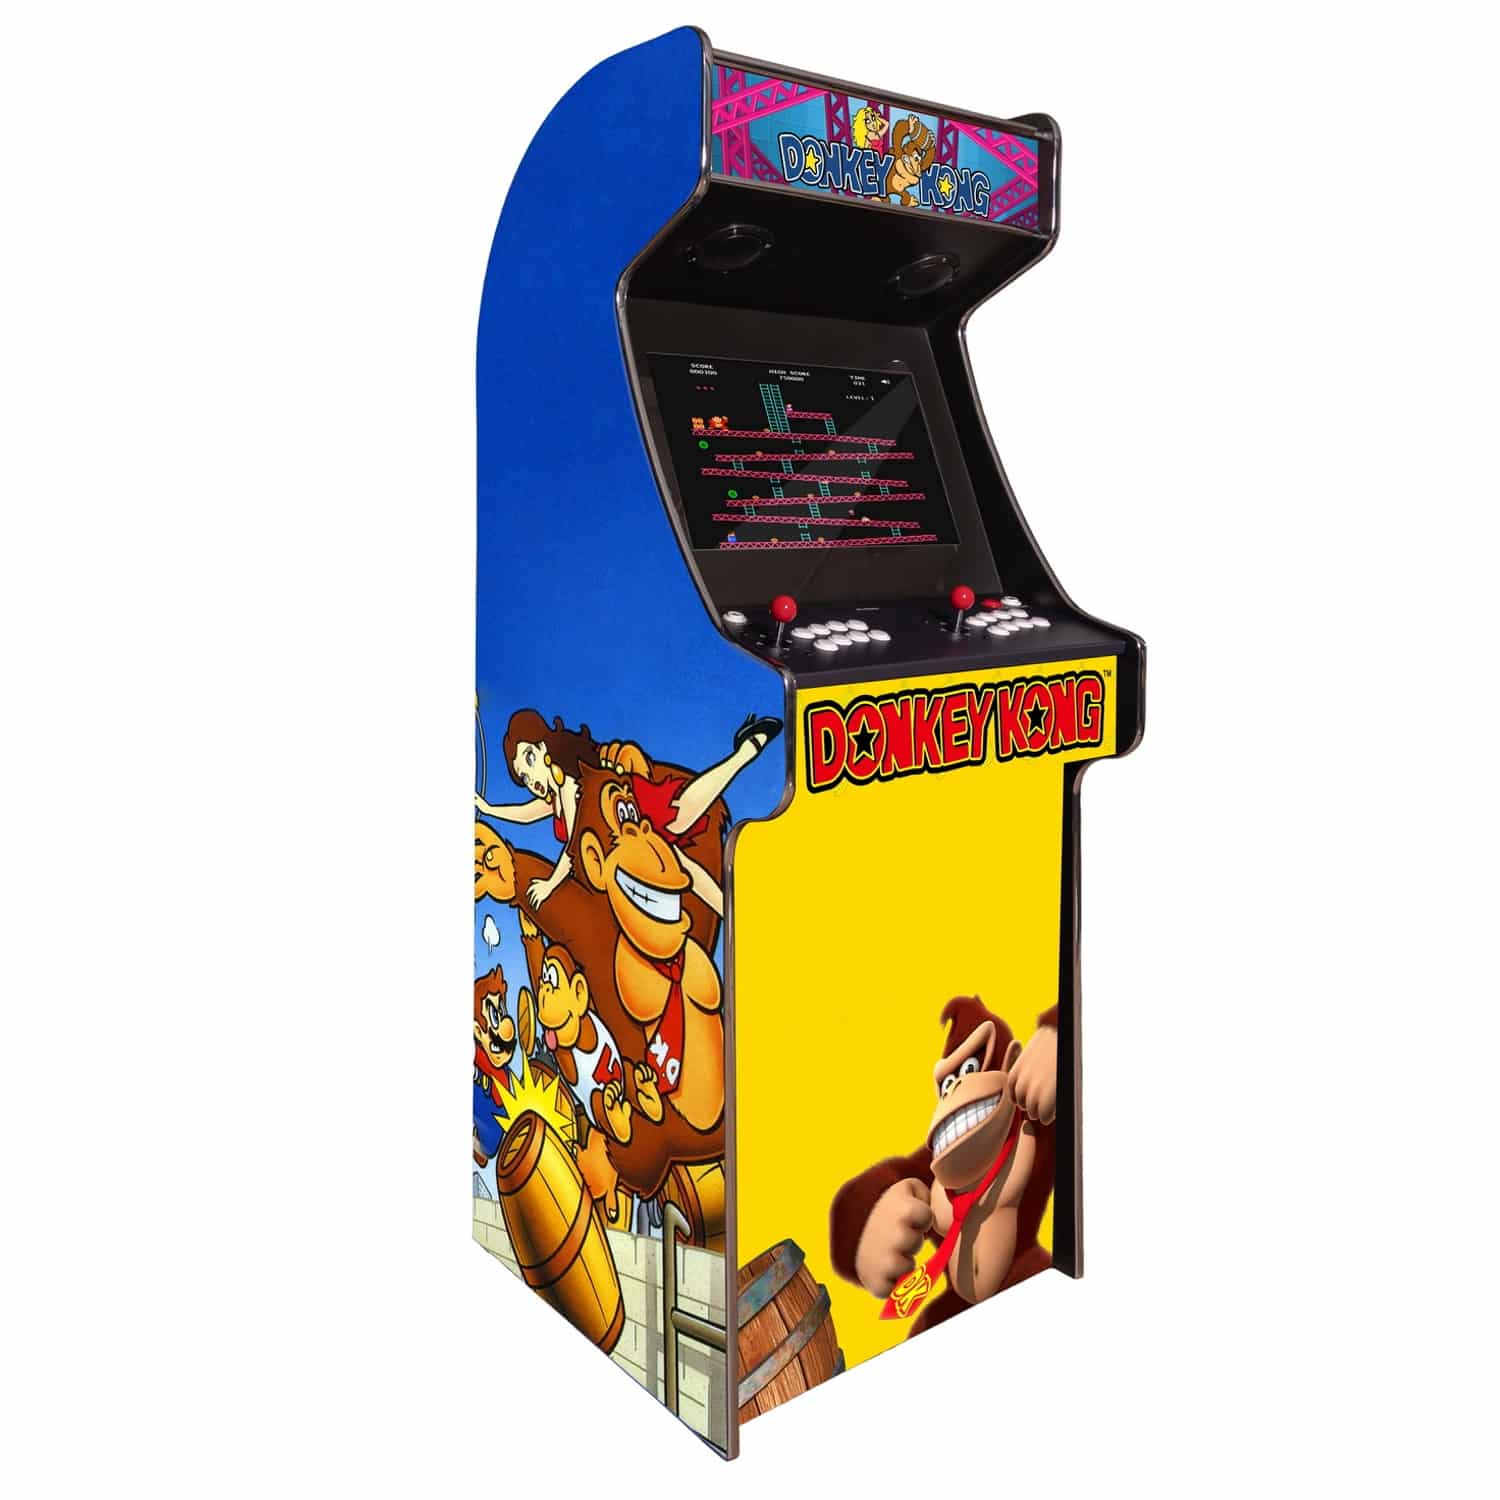 arcade machine borne born jeux cafe anciens retro recalbox neuve moderne hdmi pas cher vente achat prix france belgique donkeykong - Home